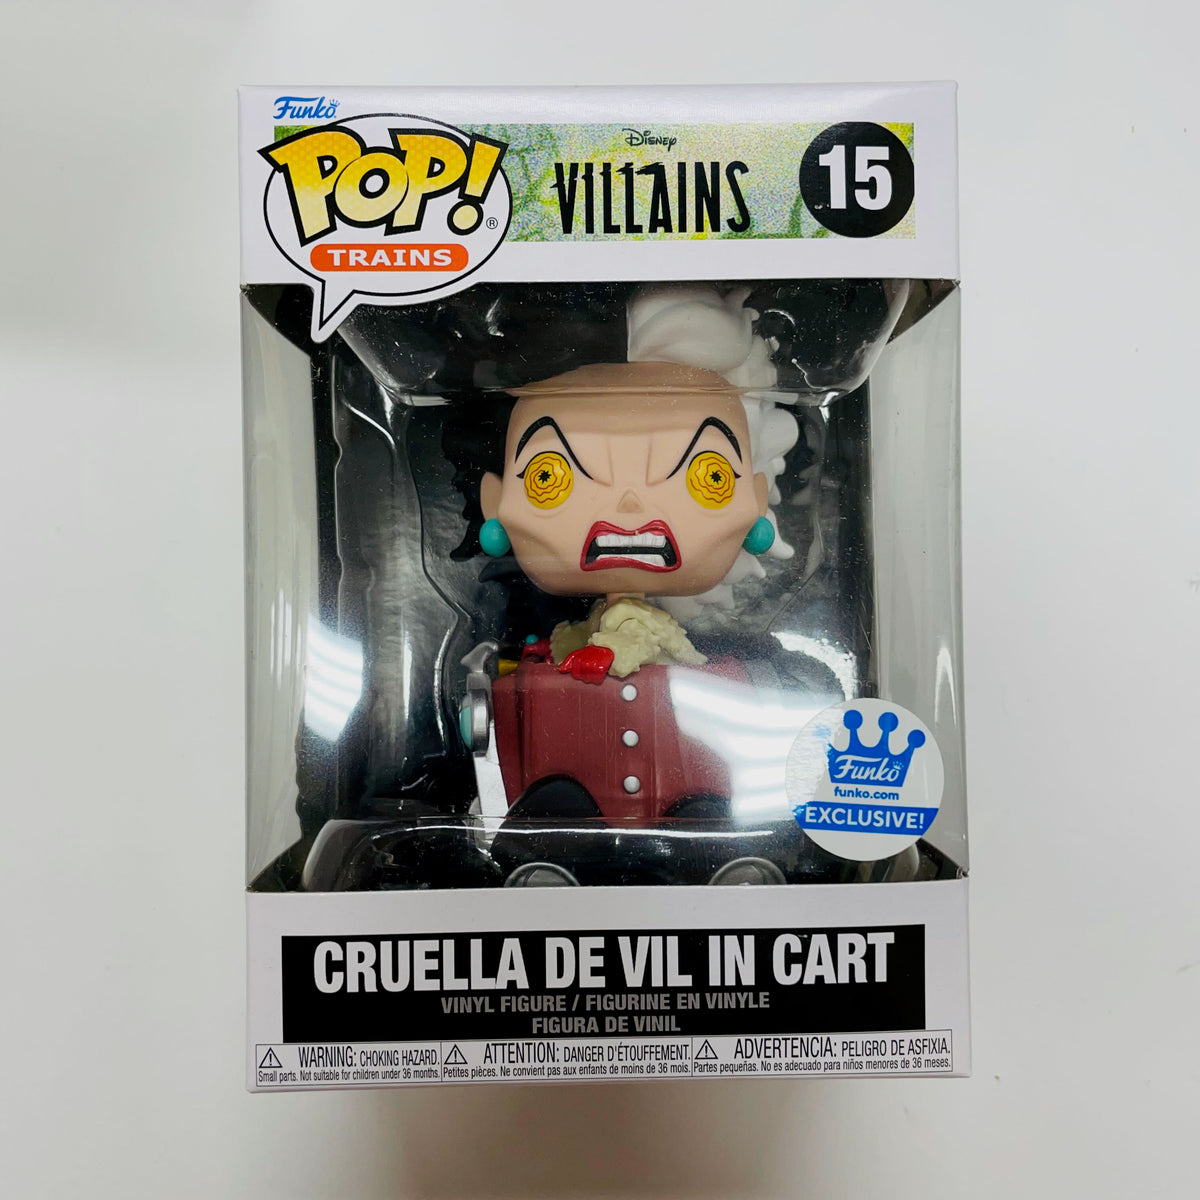 Buy Pop! Cruella de Vil at Funko.